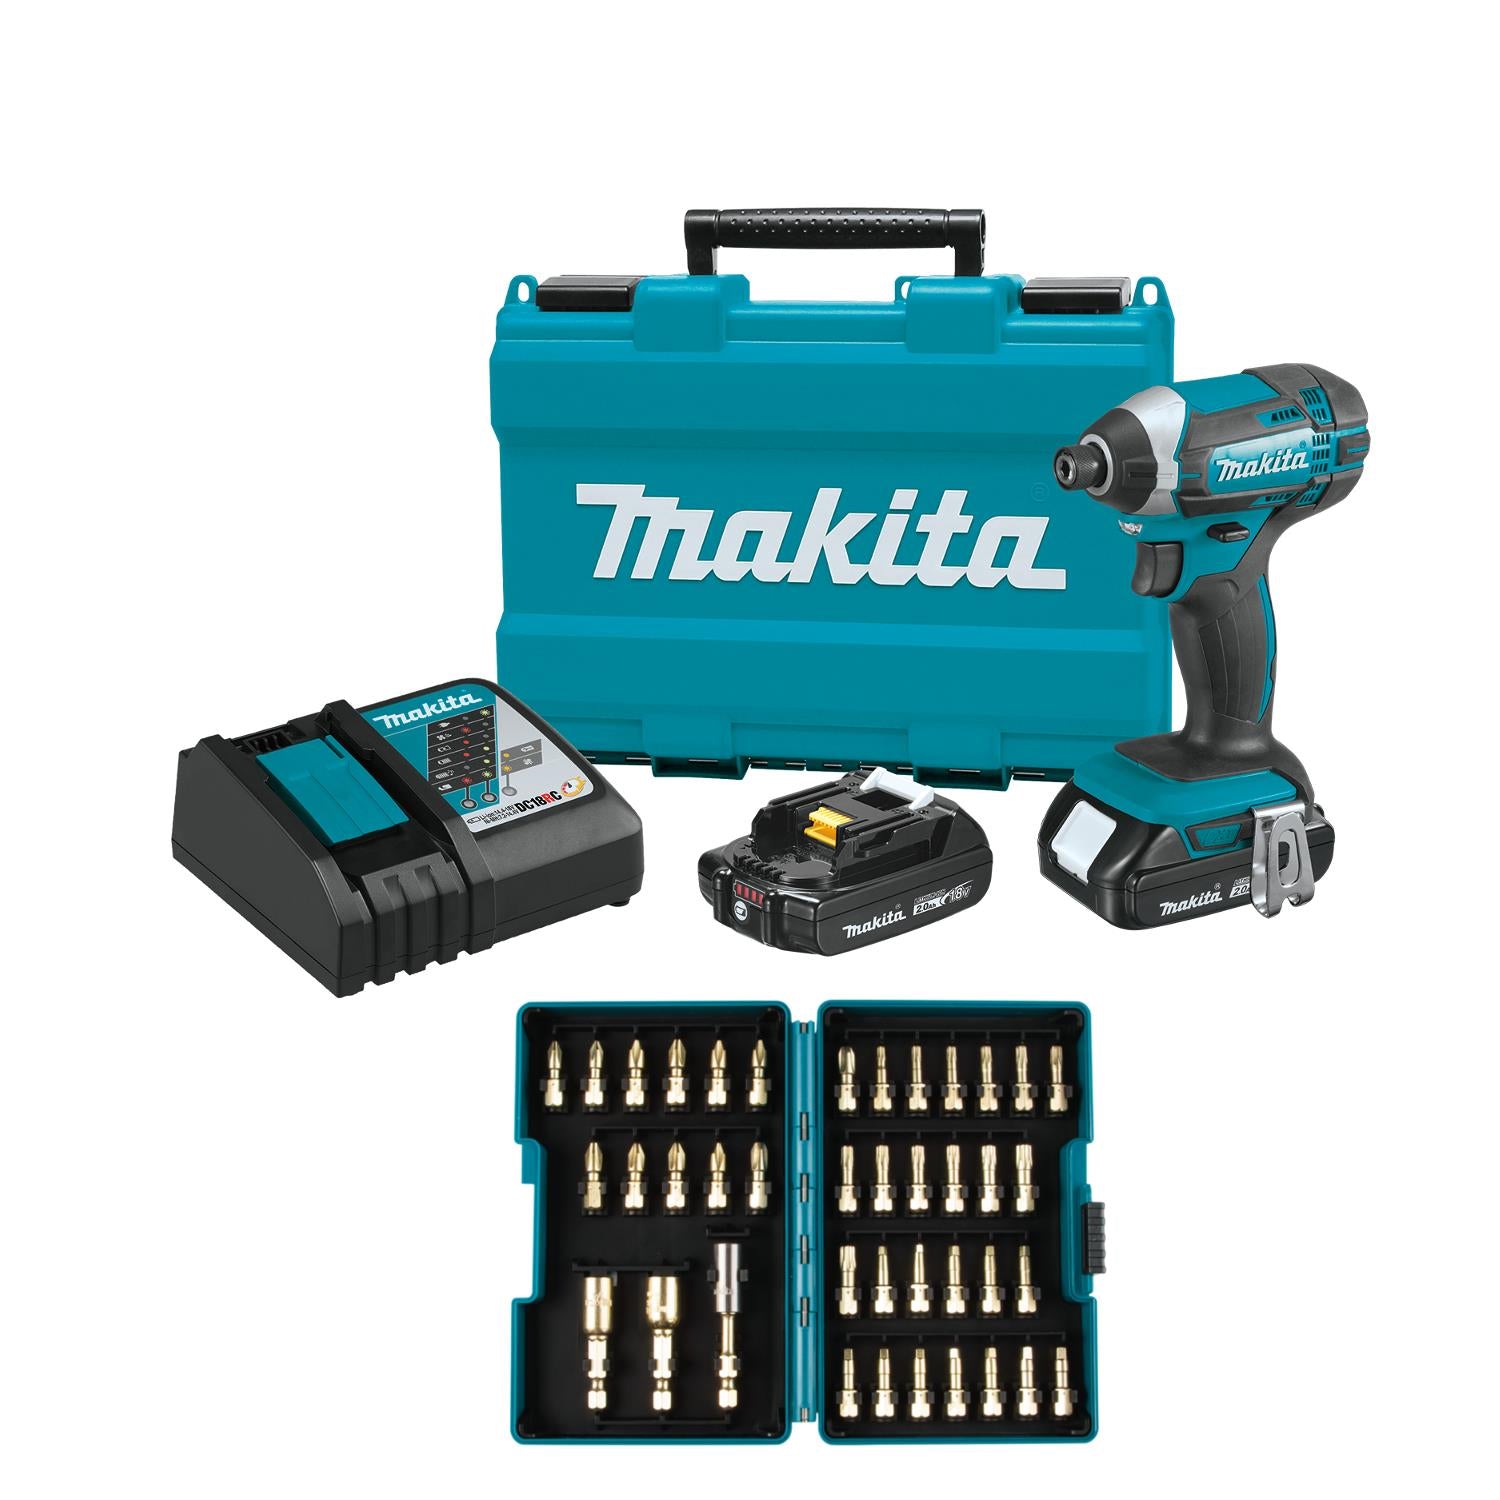 Makita 18V Compact Lithium-Ion Cordless Impact Driver Kit Set